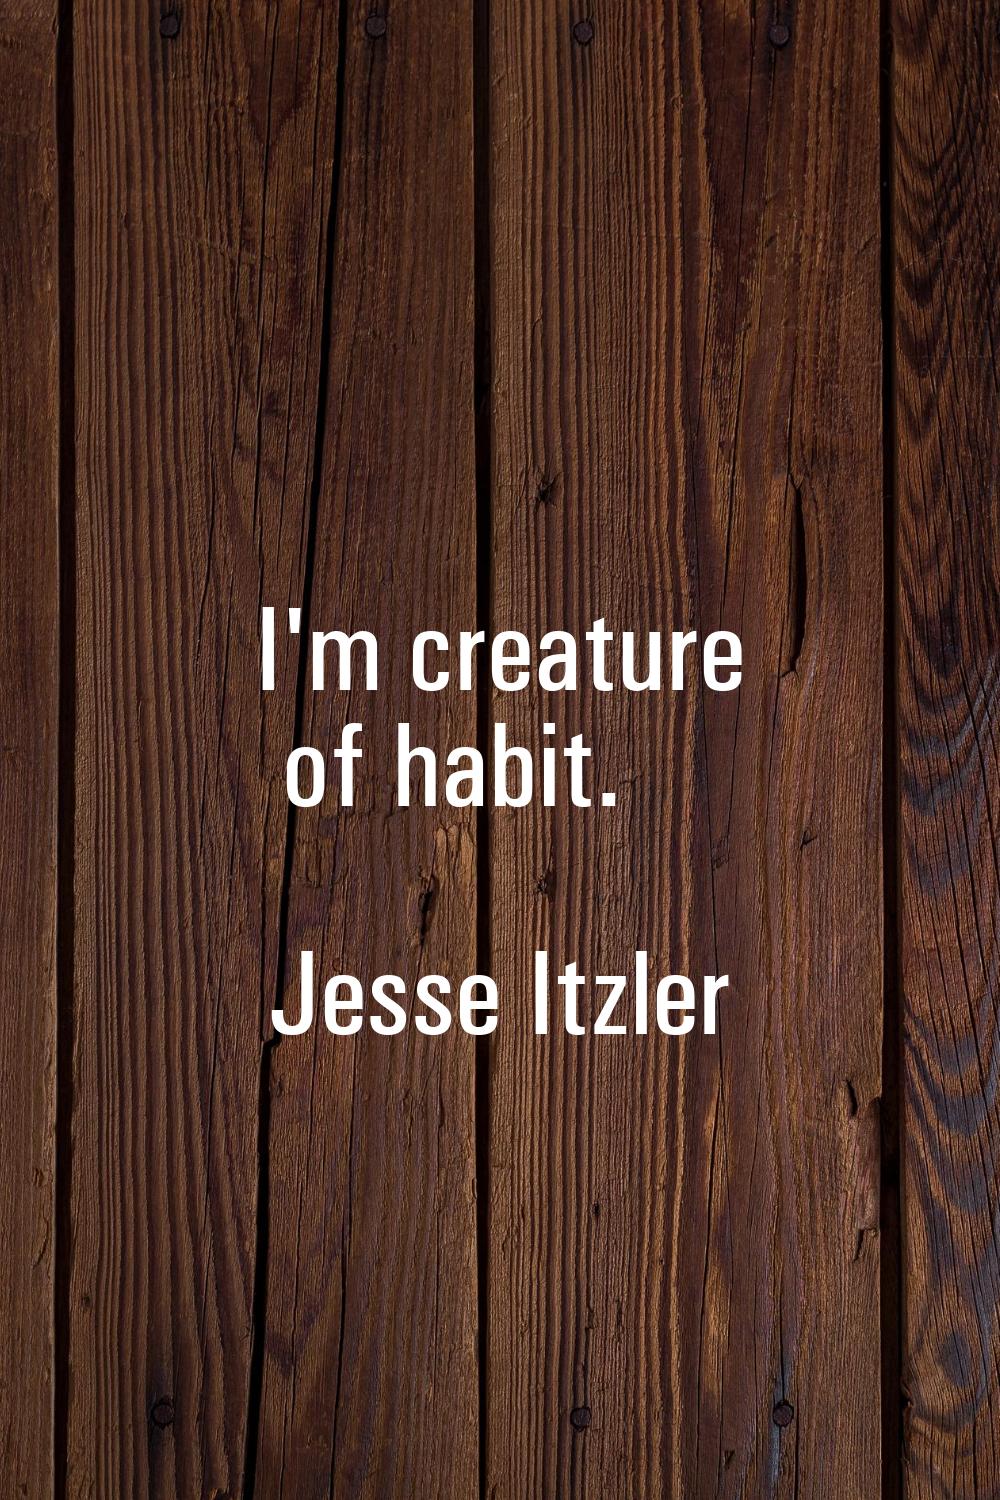 I'm creature of habit.